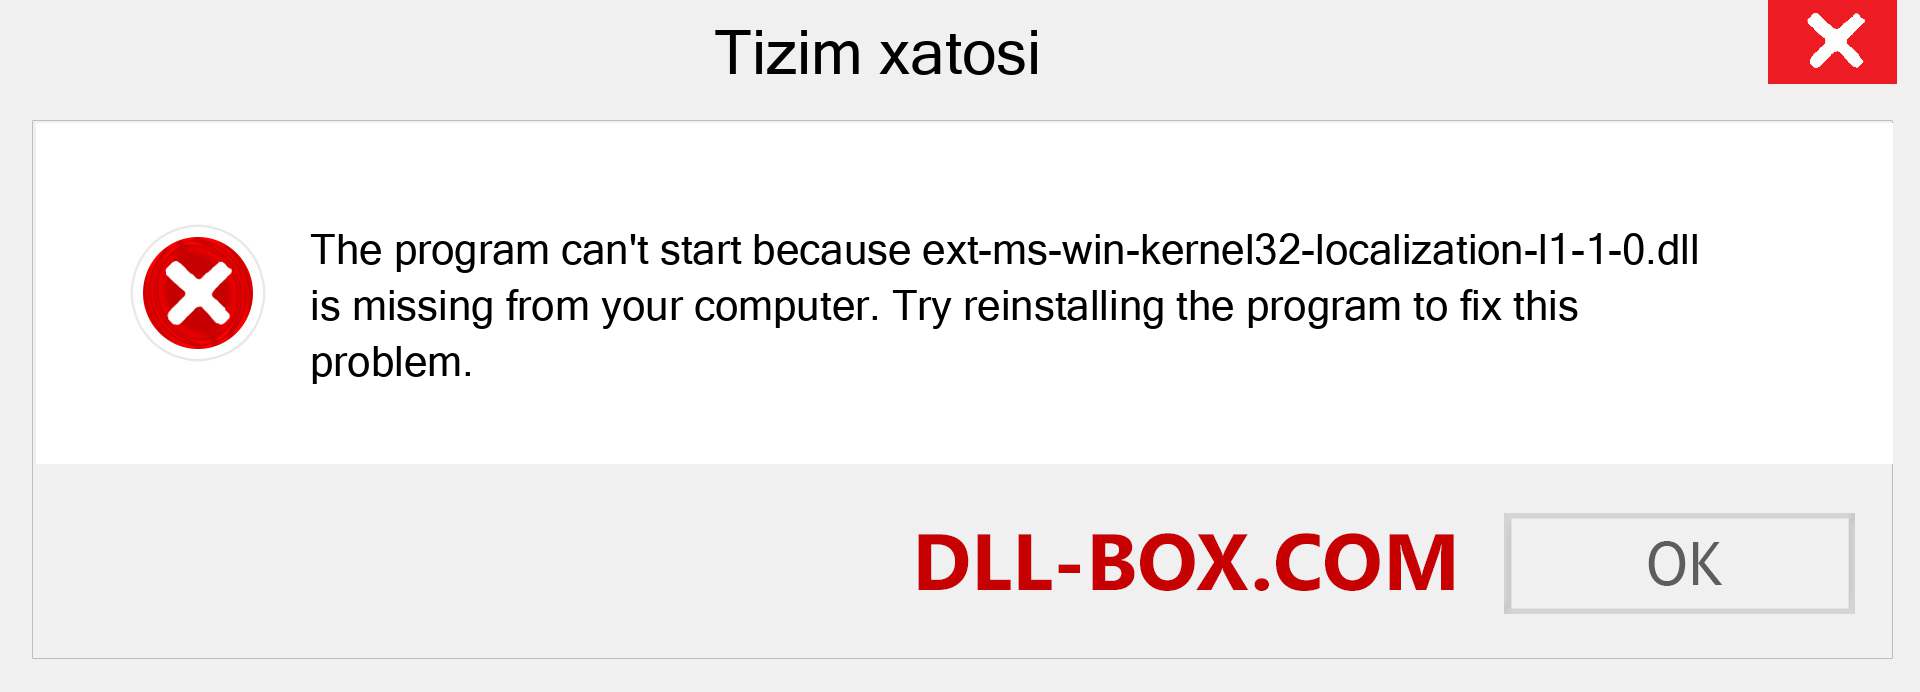 ext-ms-win-kernel32-localization-l1-1-0.dll fayli yo'qolganmi?. Windows 7, 8, 10 uchun yuklab olish - Windowsda ext-ms-win-kernel32-localization-l1-1-0 dll etishmayotgan xatoni tuzating, rasmlar, rasmlar